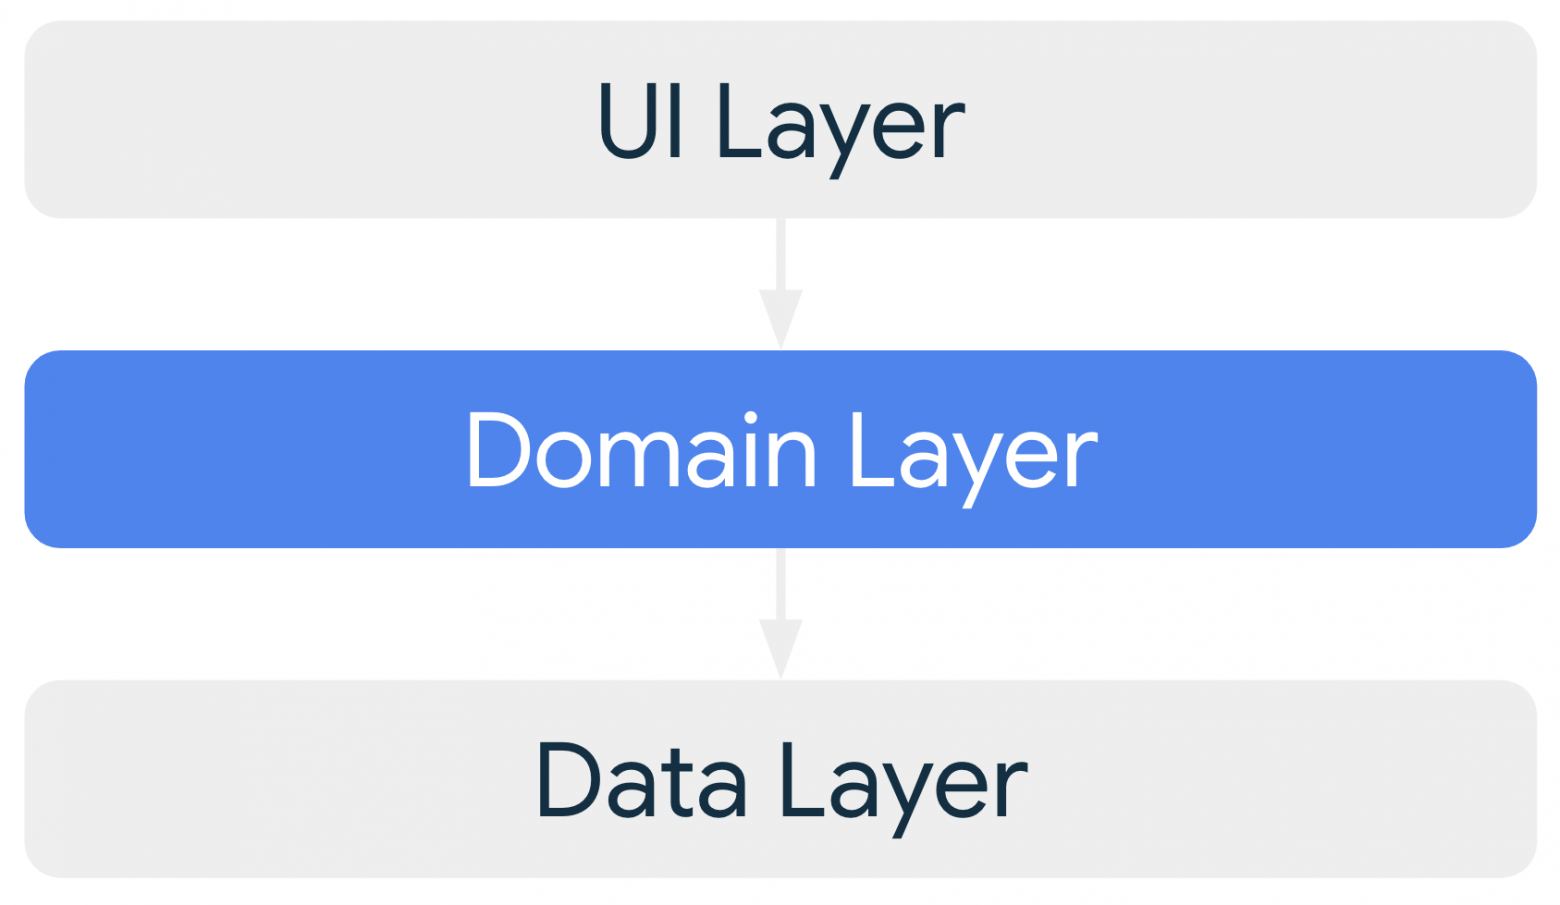 Роль доменного слоя в архитектуре приложения